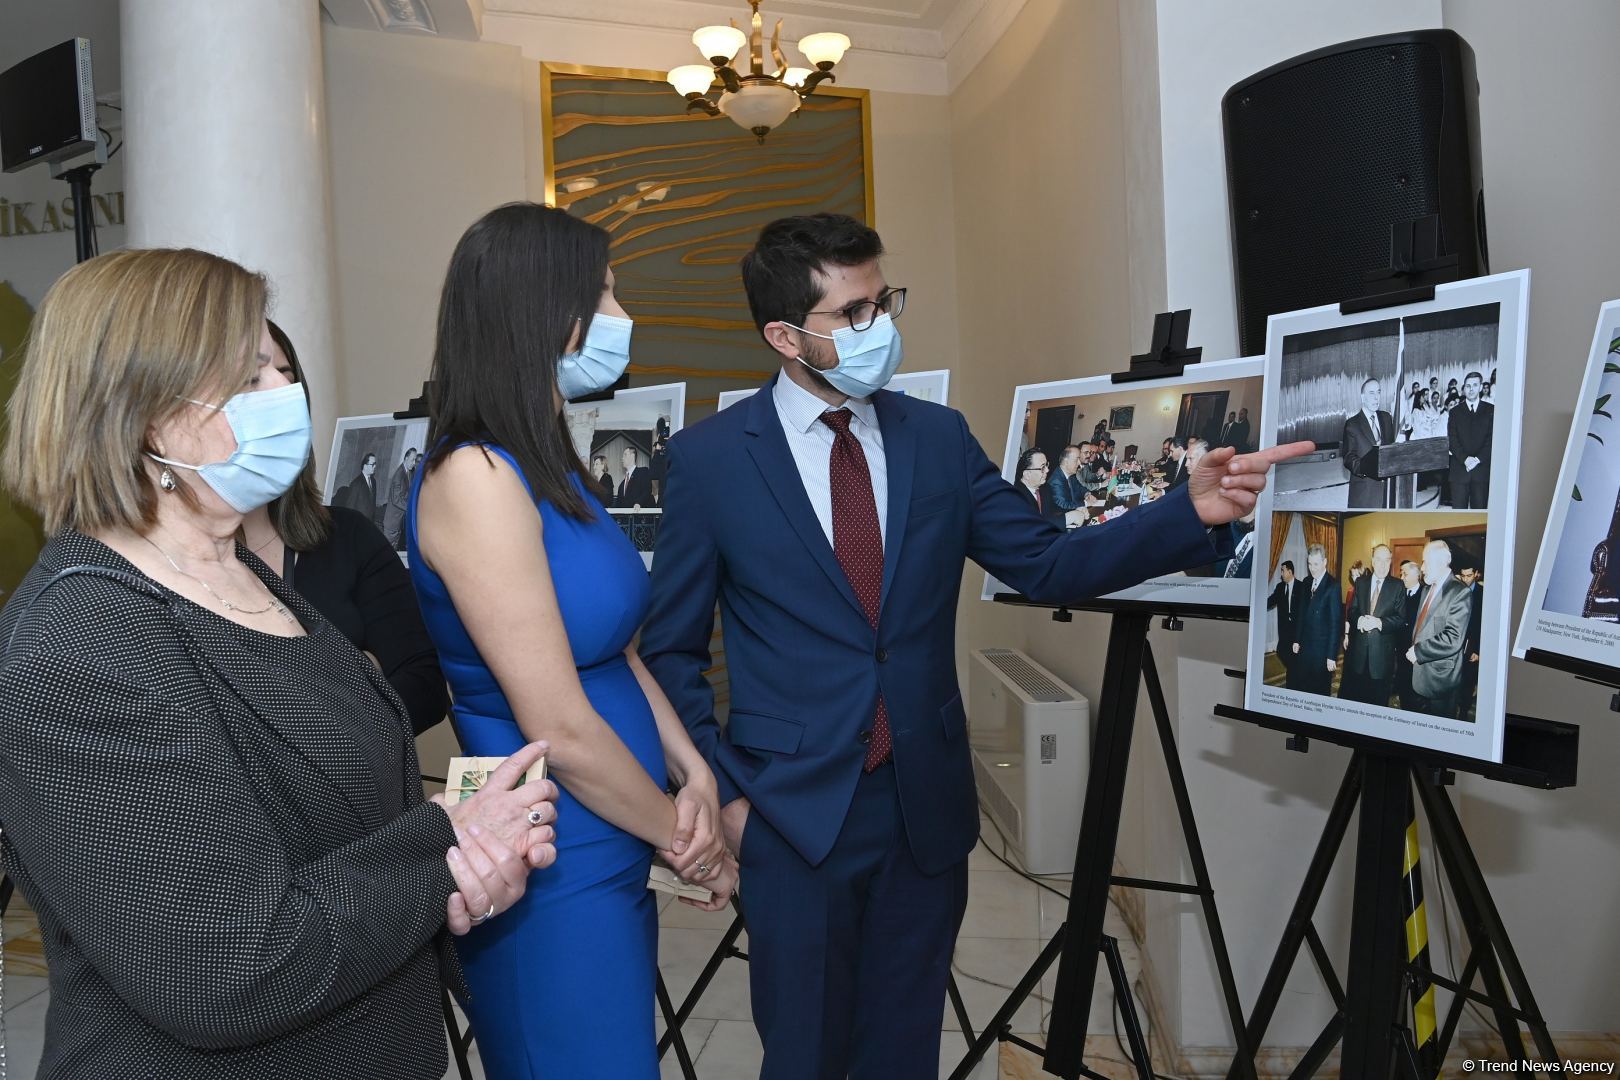 Состоялись мероприятие и выставка по случаю 30-летия дипсвязей между Азербайджаном и Израилем (ФОТО)